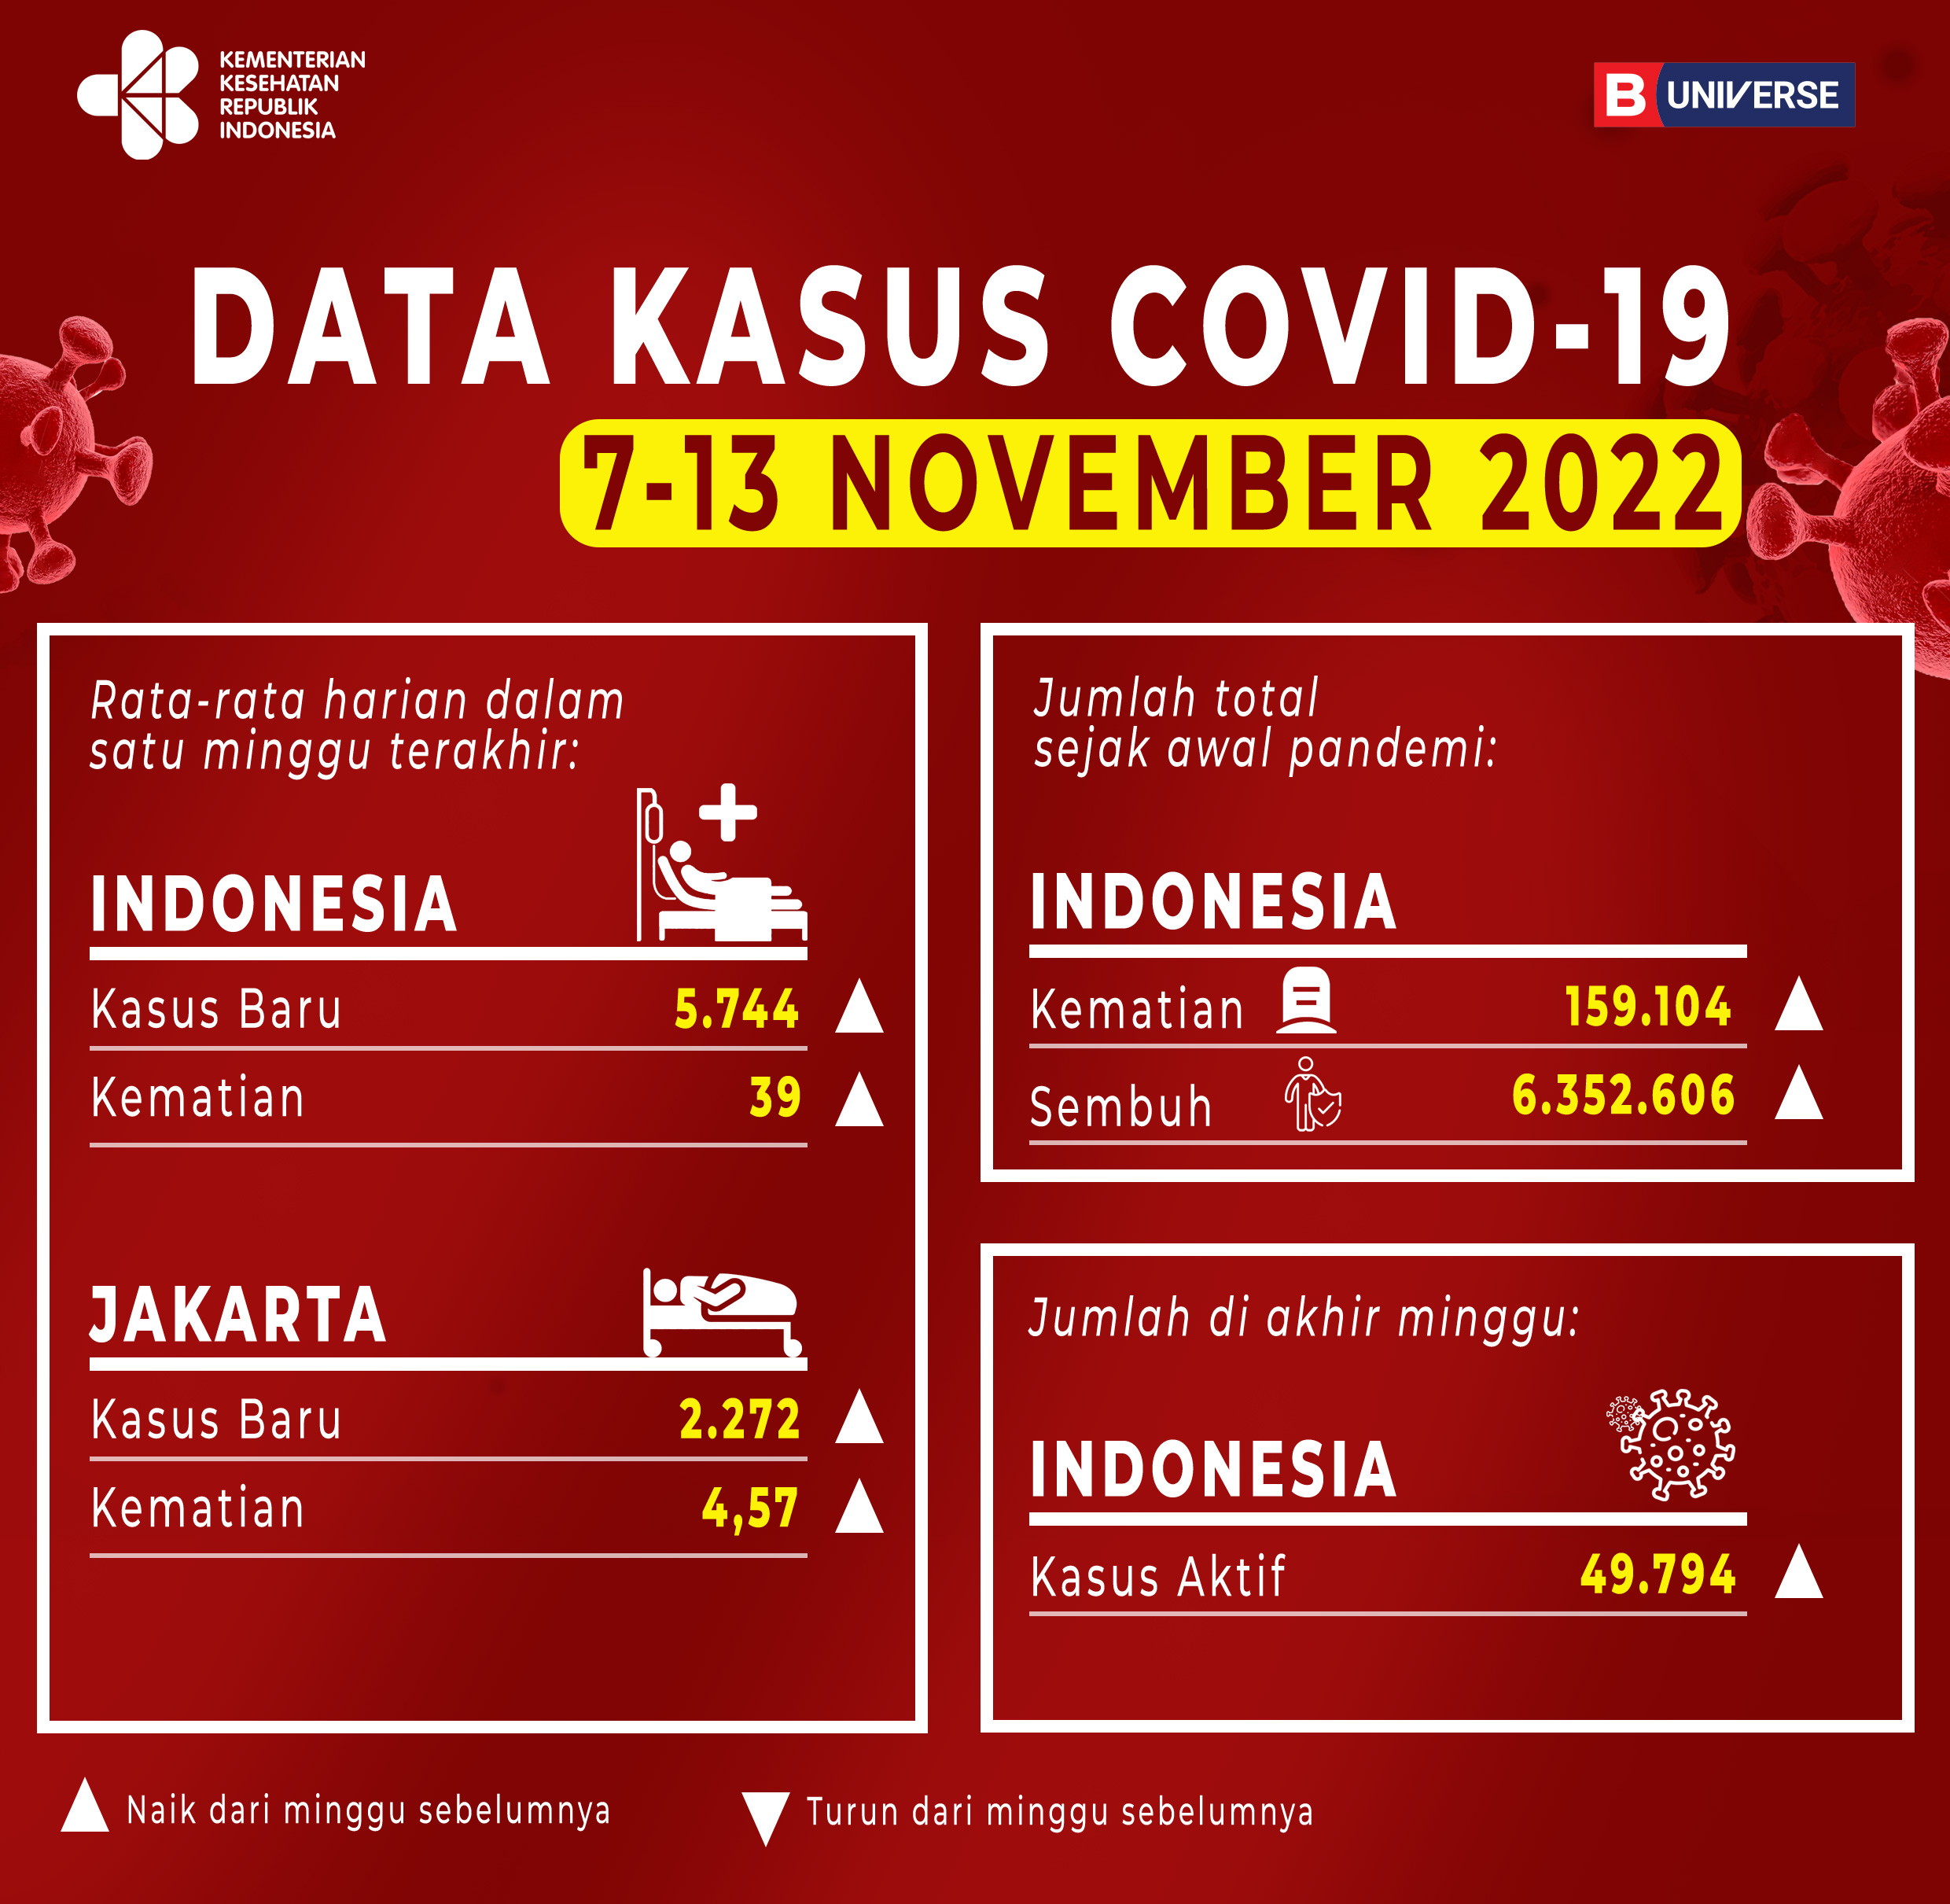 Infografik Kasus Covid-19 di Indonesia pada 7-13 November